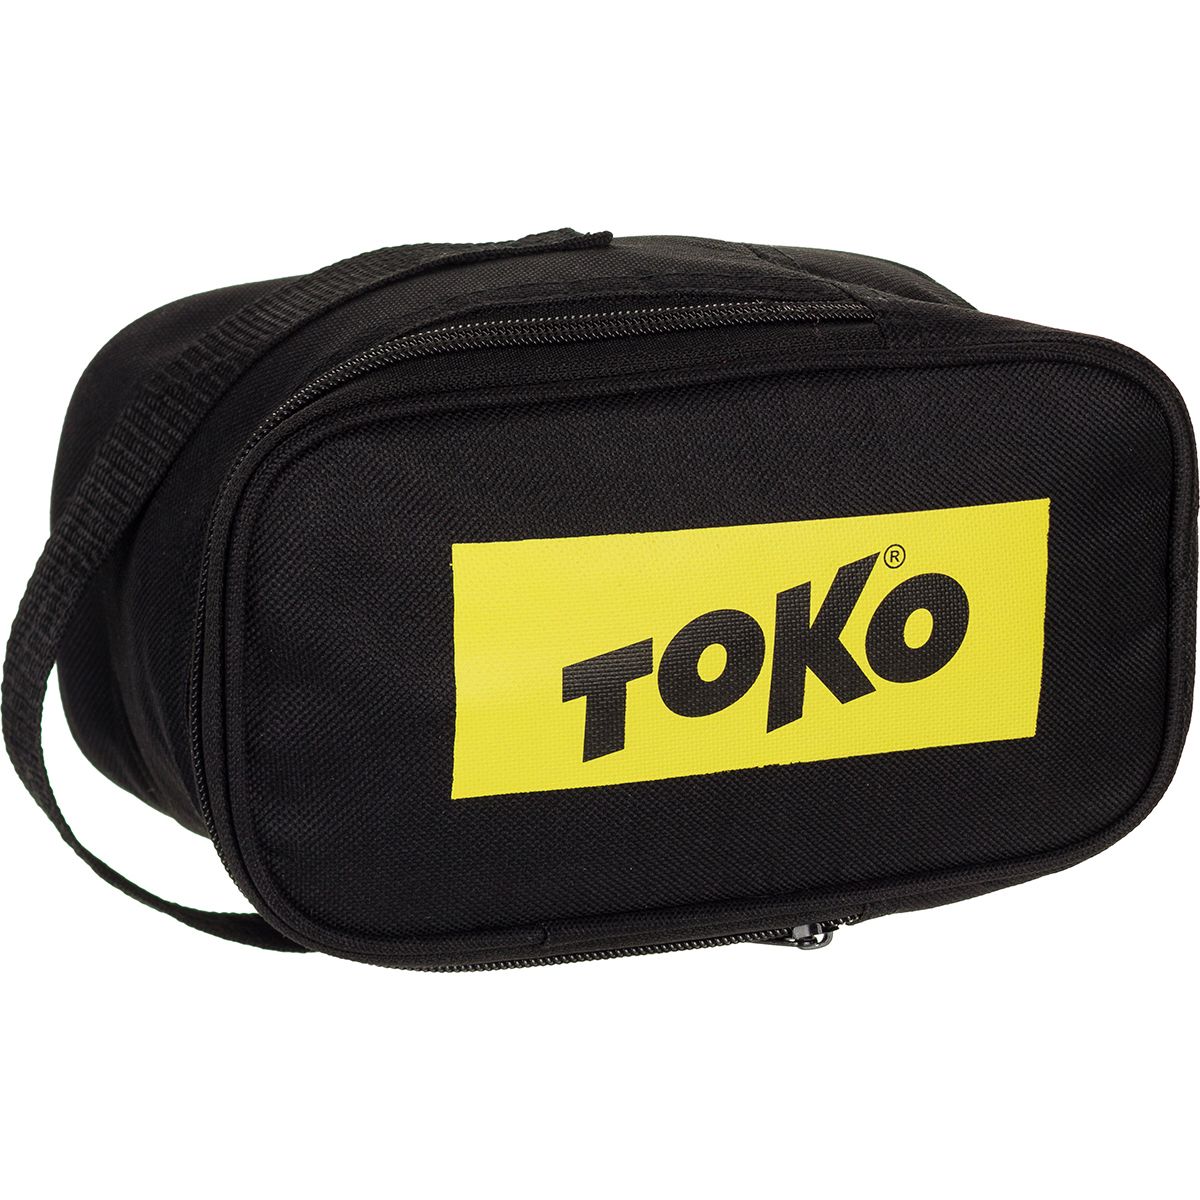 Toko Core Tune and Wax Kit